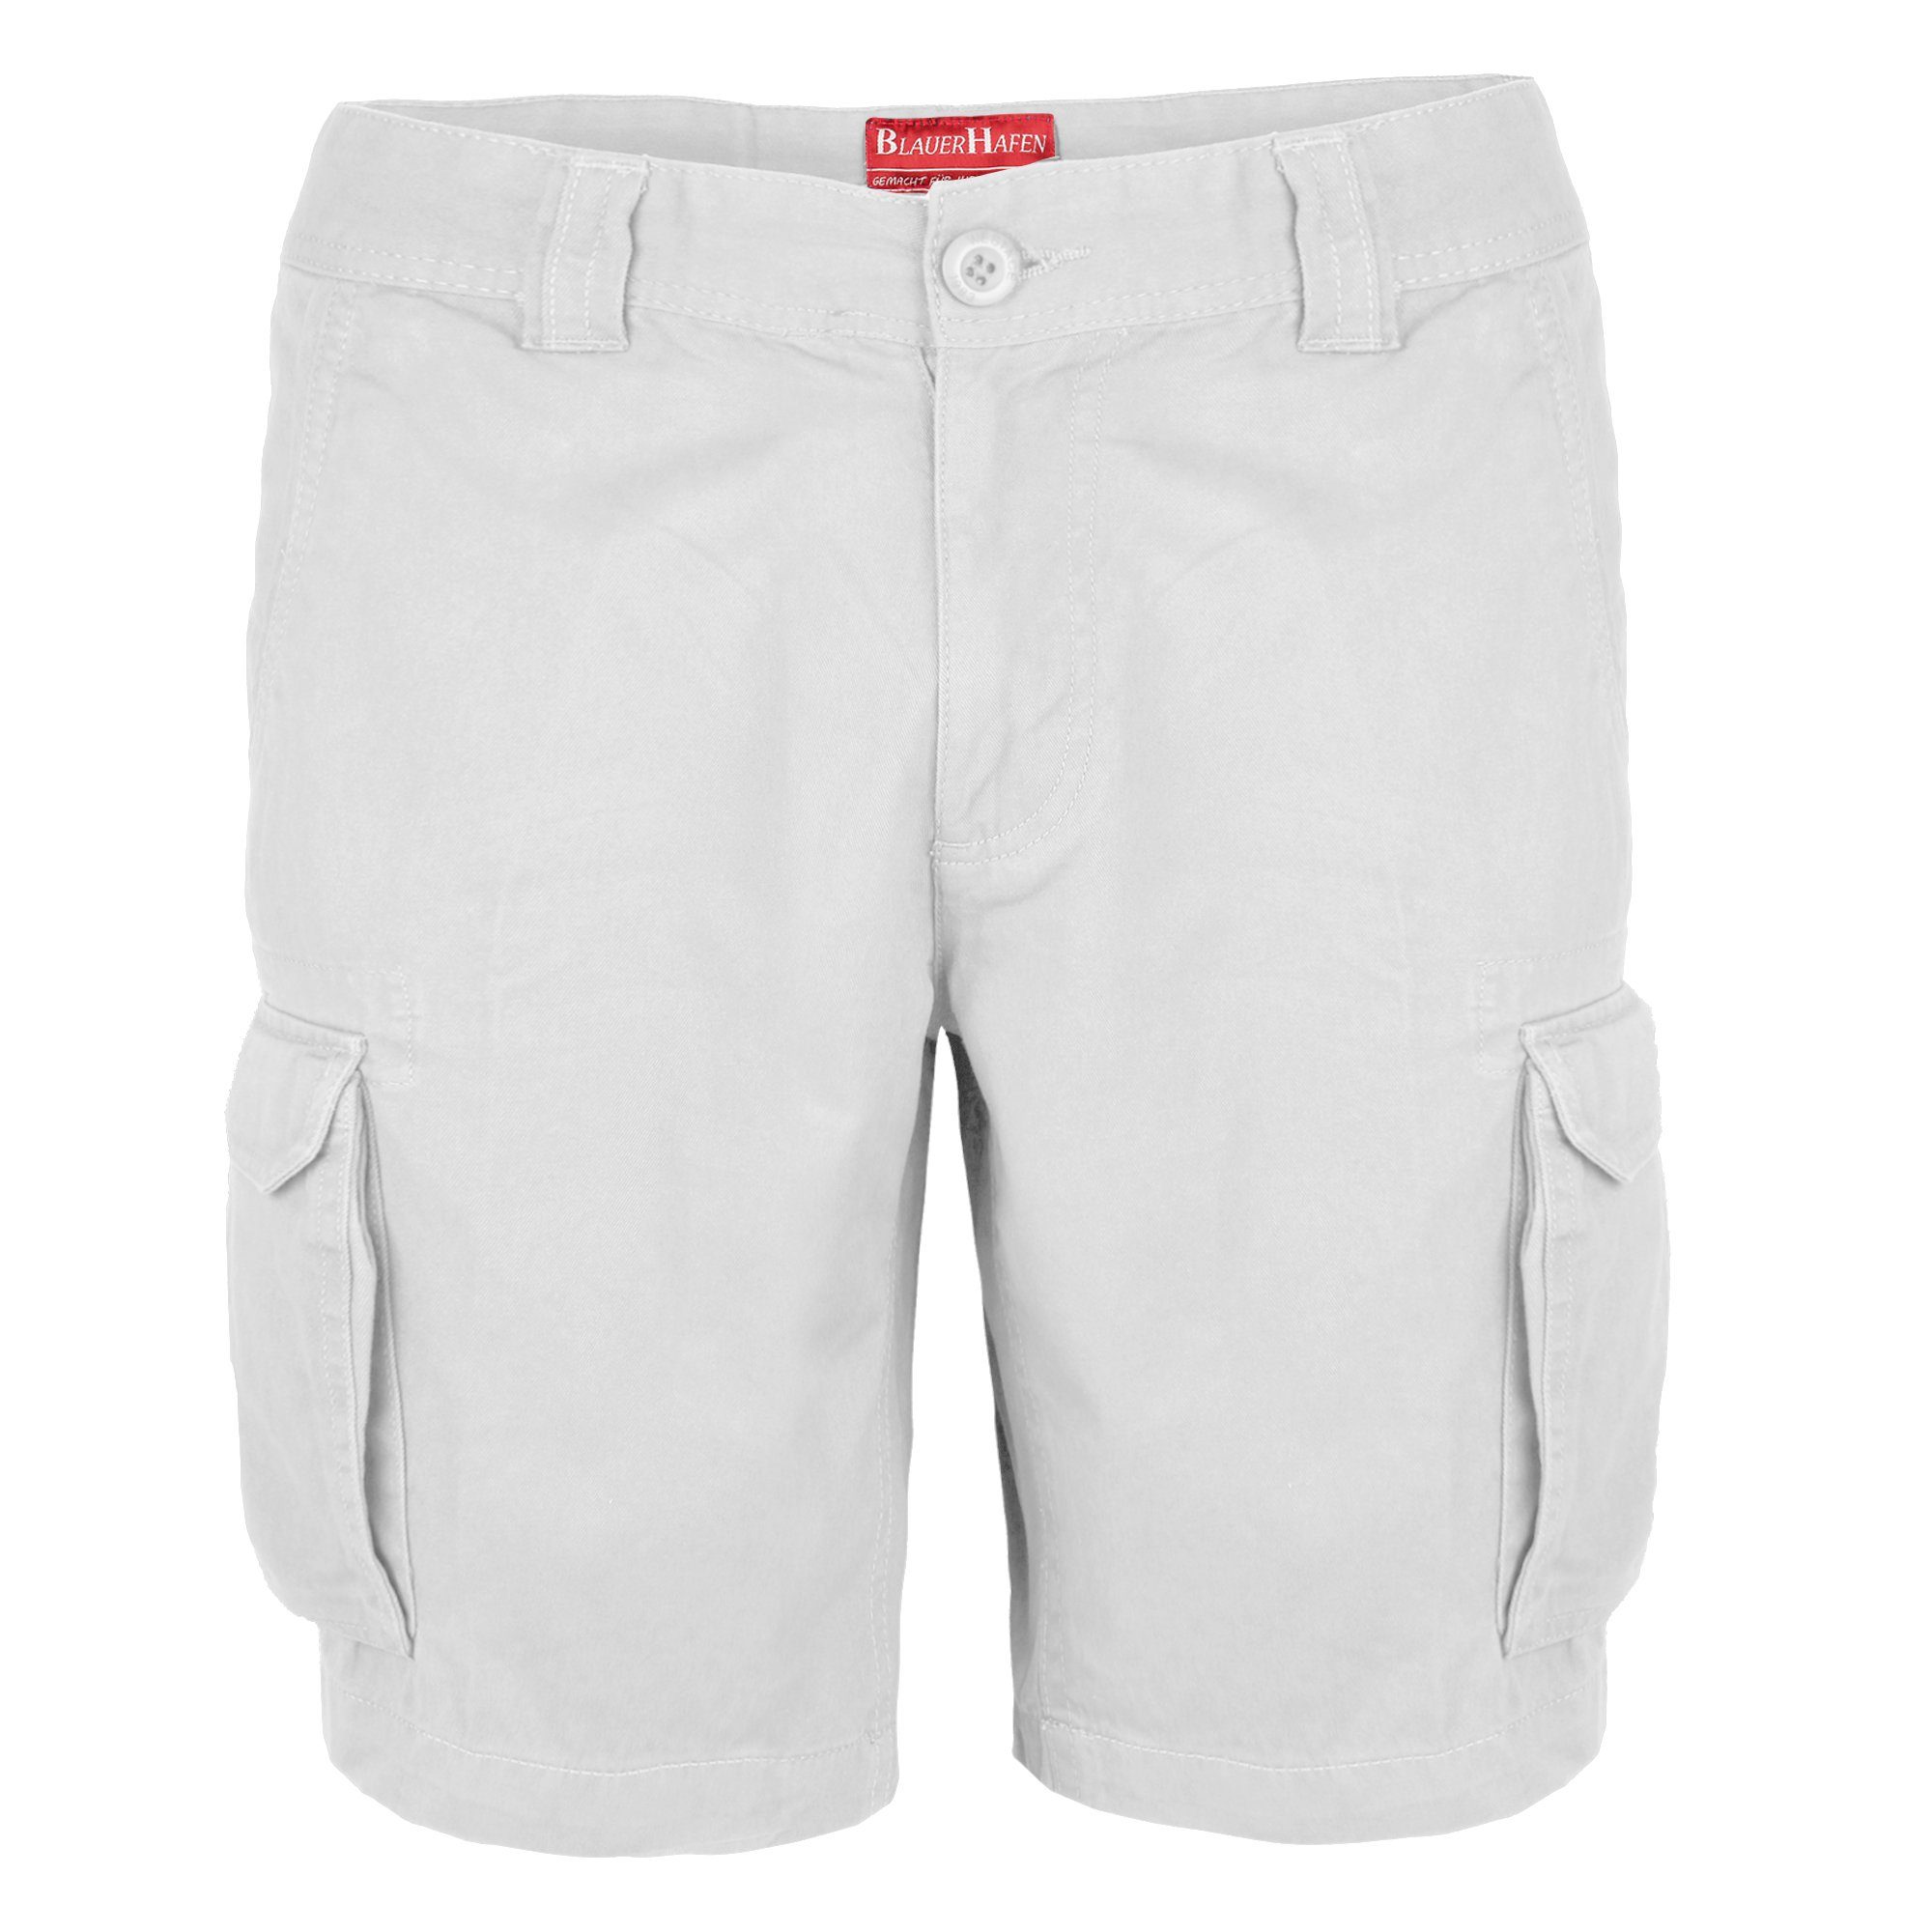 BlauerHafen Cargoshorts Herren Cargo Shorts 100% Baumwolle Hose Normale Passform Bermuda Weiß